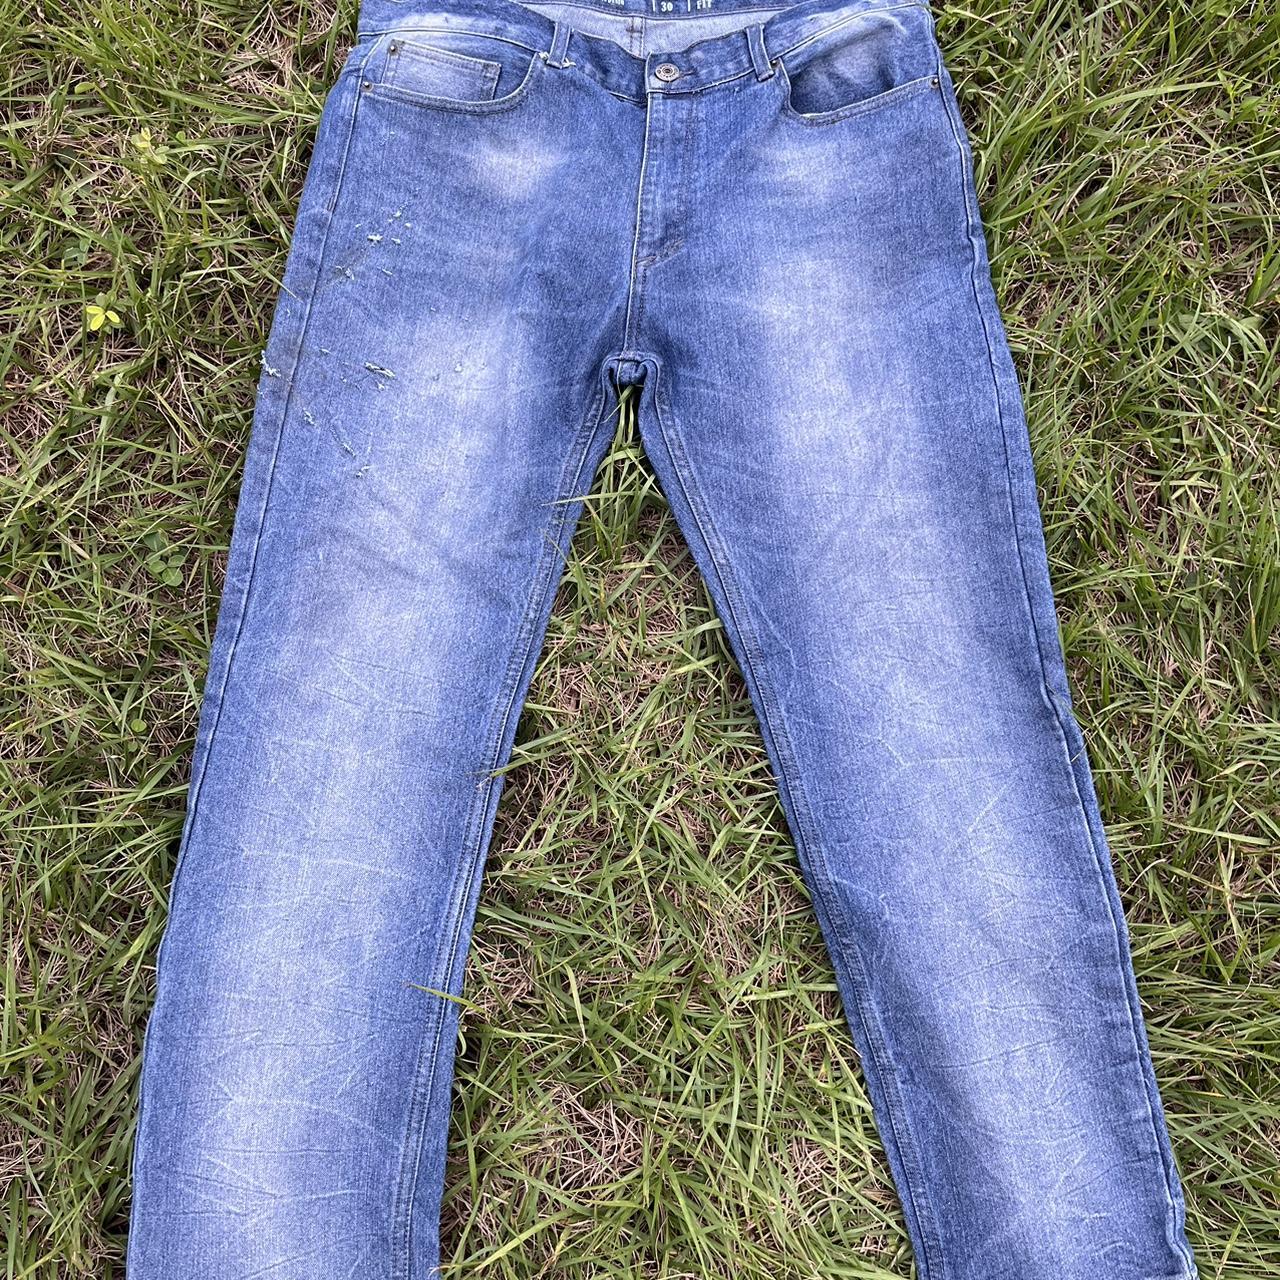 Vintage Genes Jeans Slim fit 36x30 #vintage... - Depop